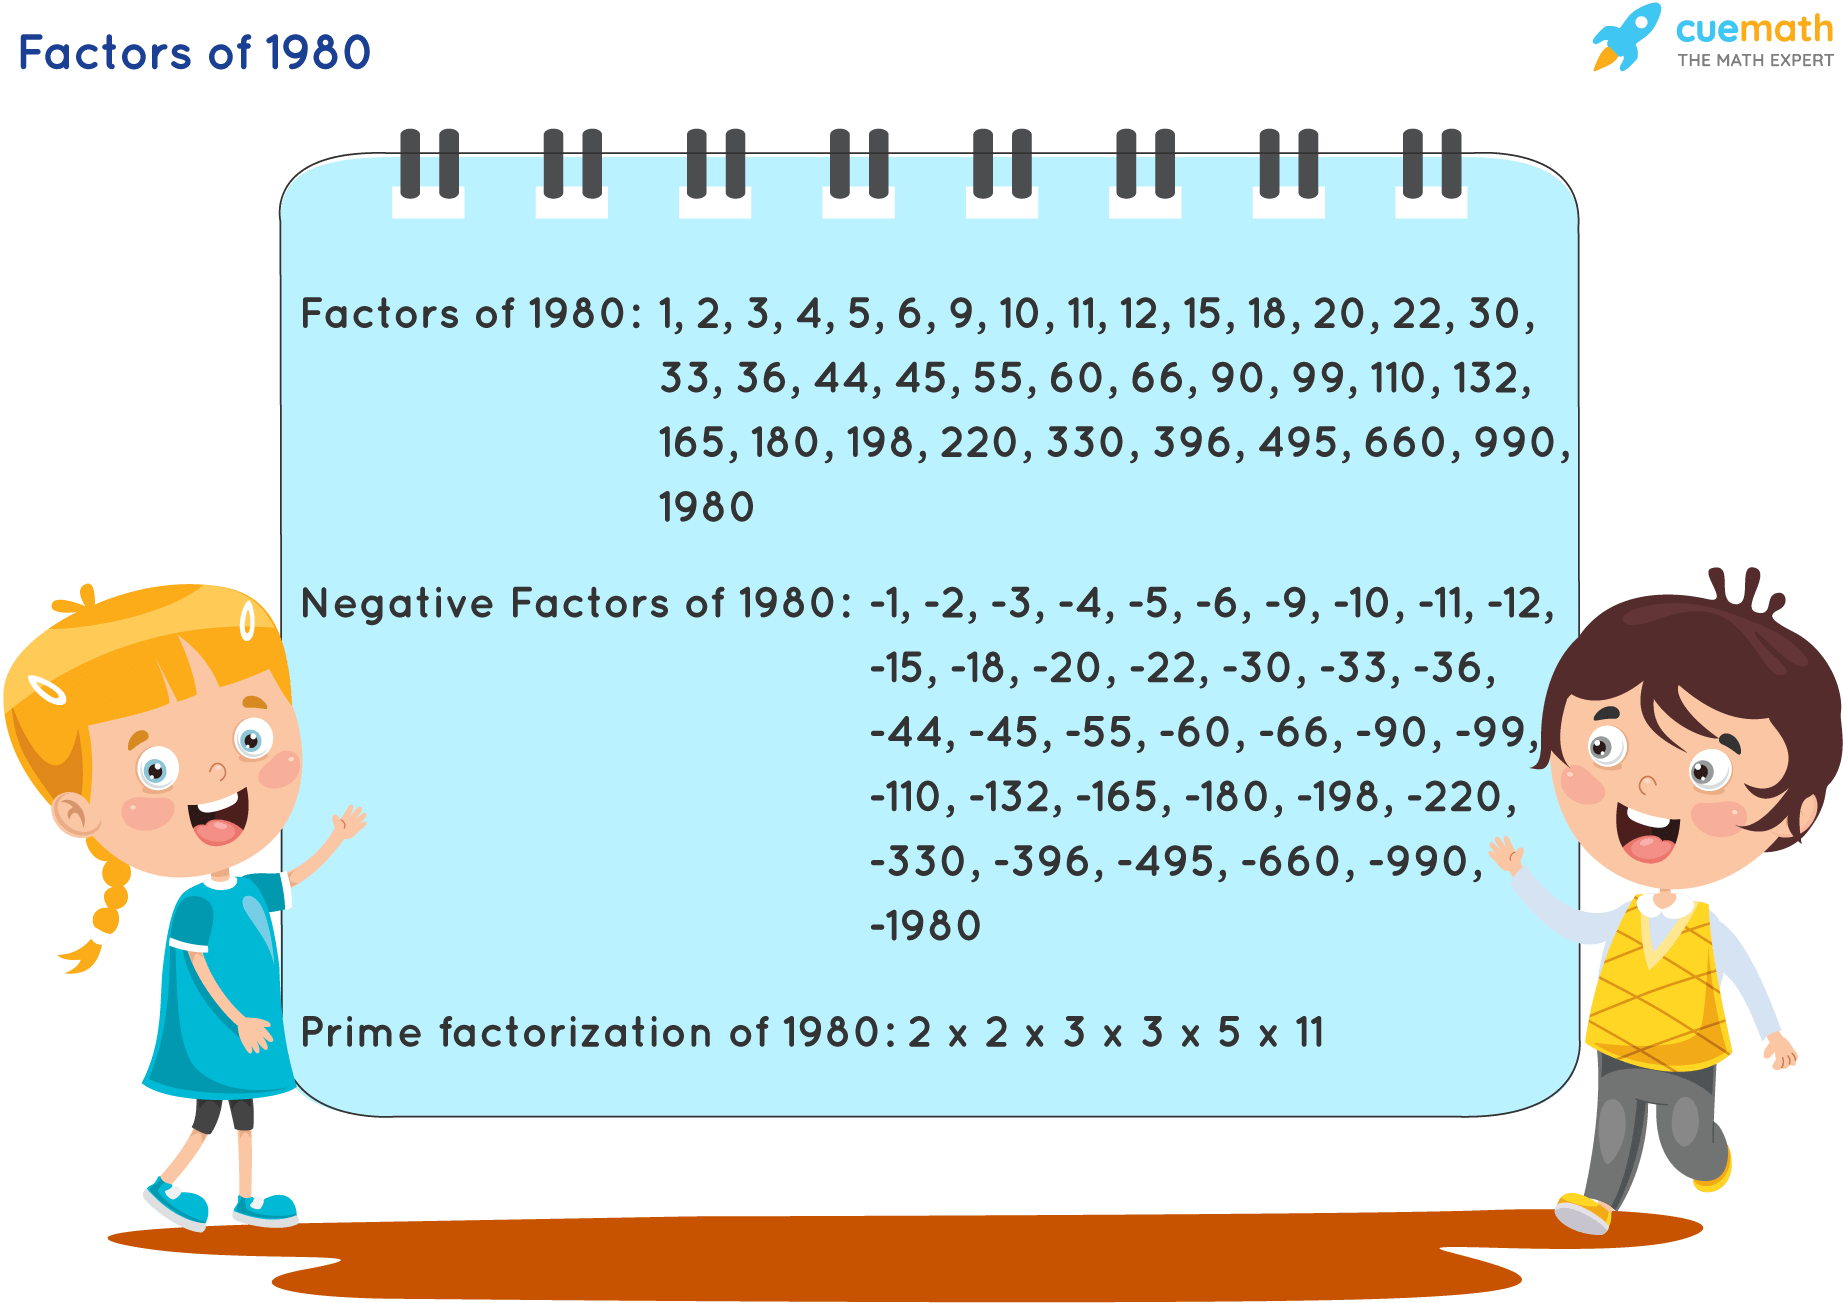 Factors of 1980